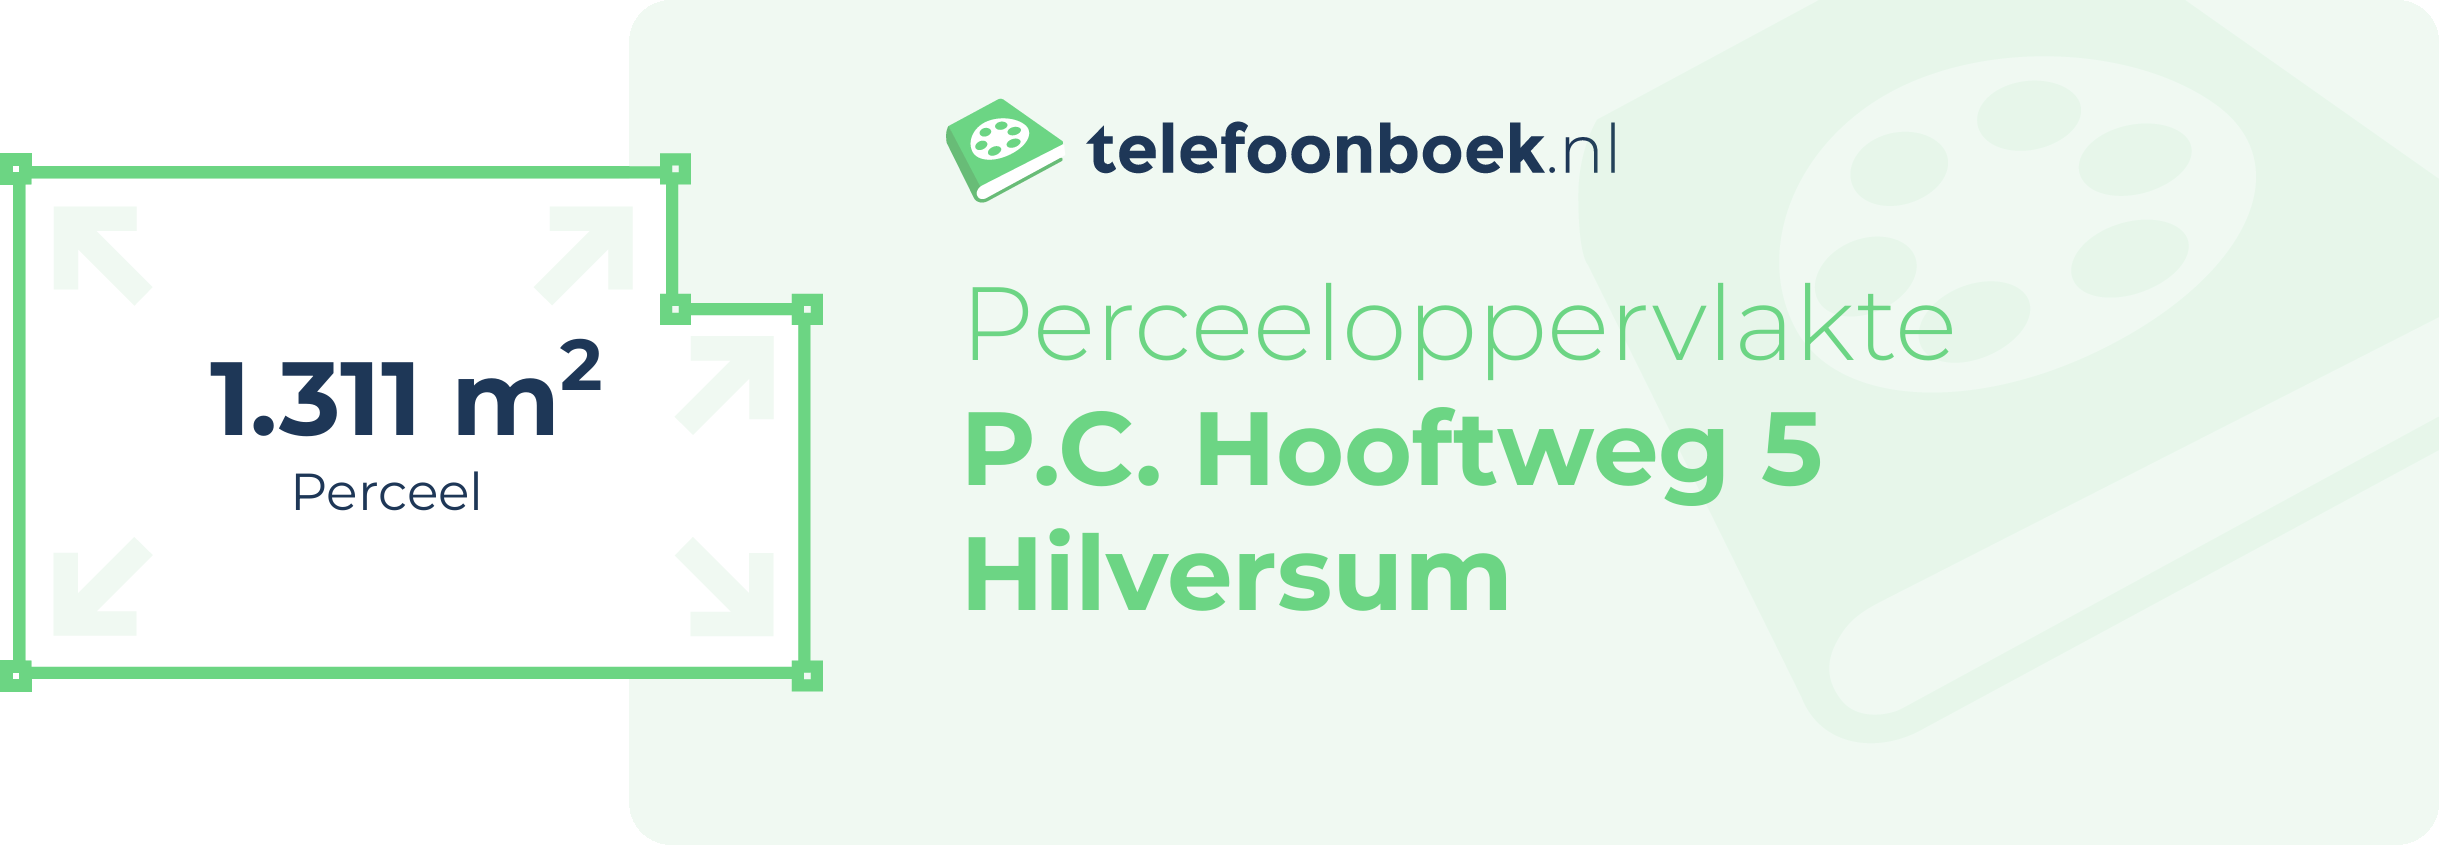 Perceeloppervlakte P.C. Hooftweg 5 Hilversum